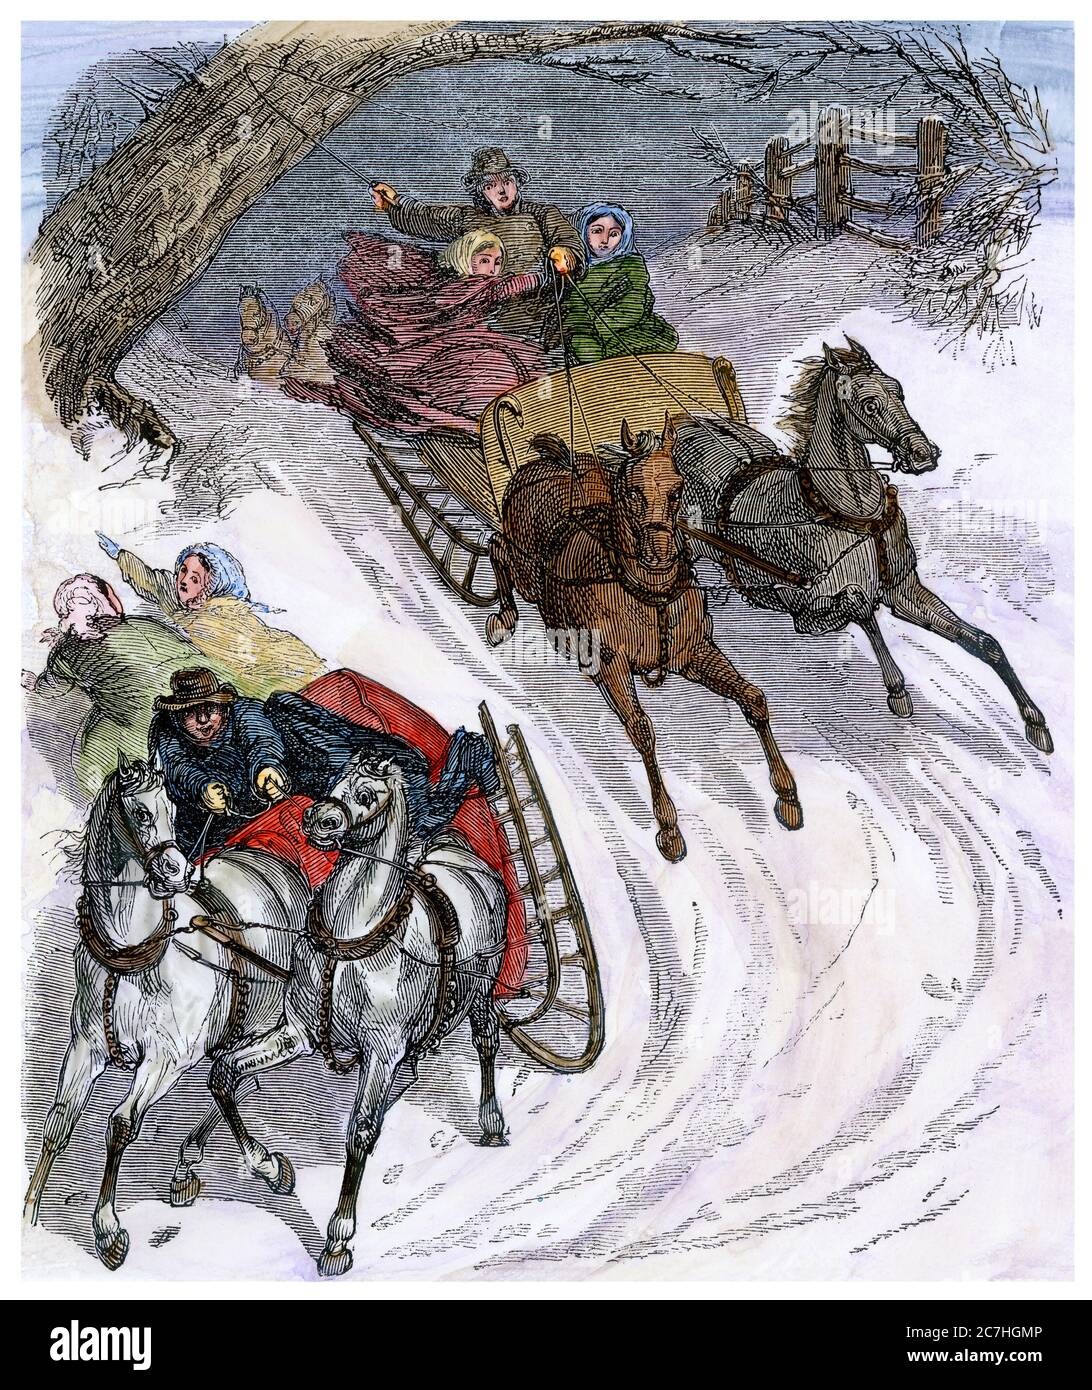 Carreras de trineos en una colina nevada, 1800. Madera talada a mano Foto de stock